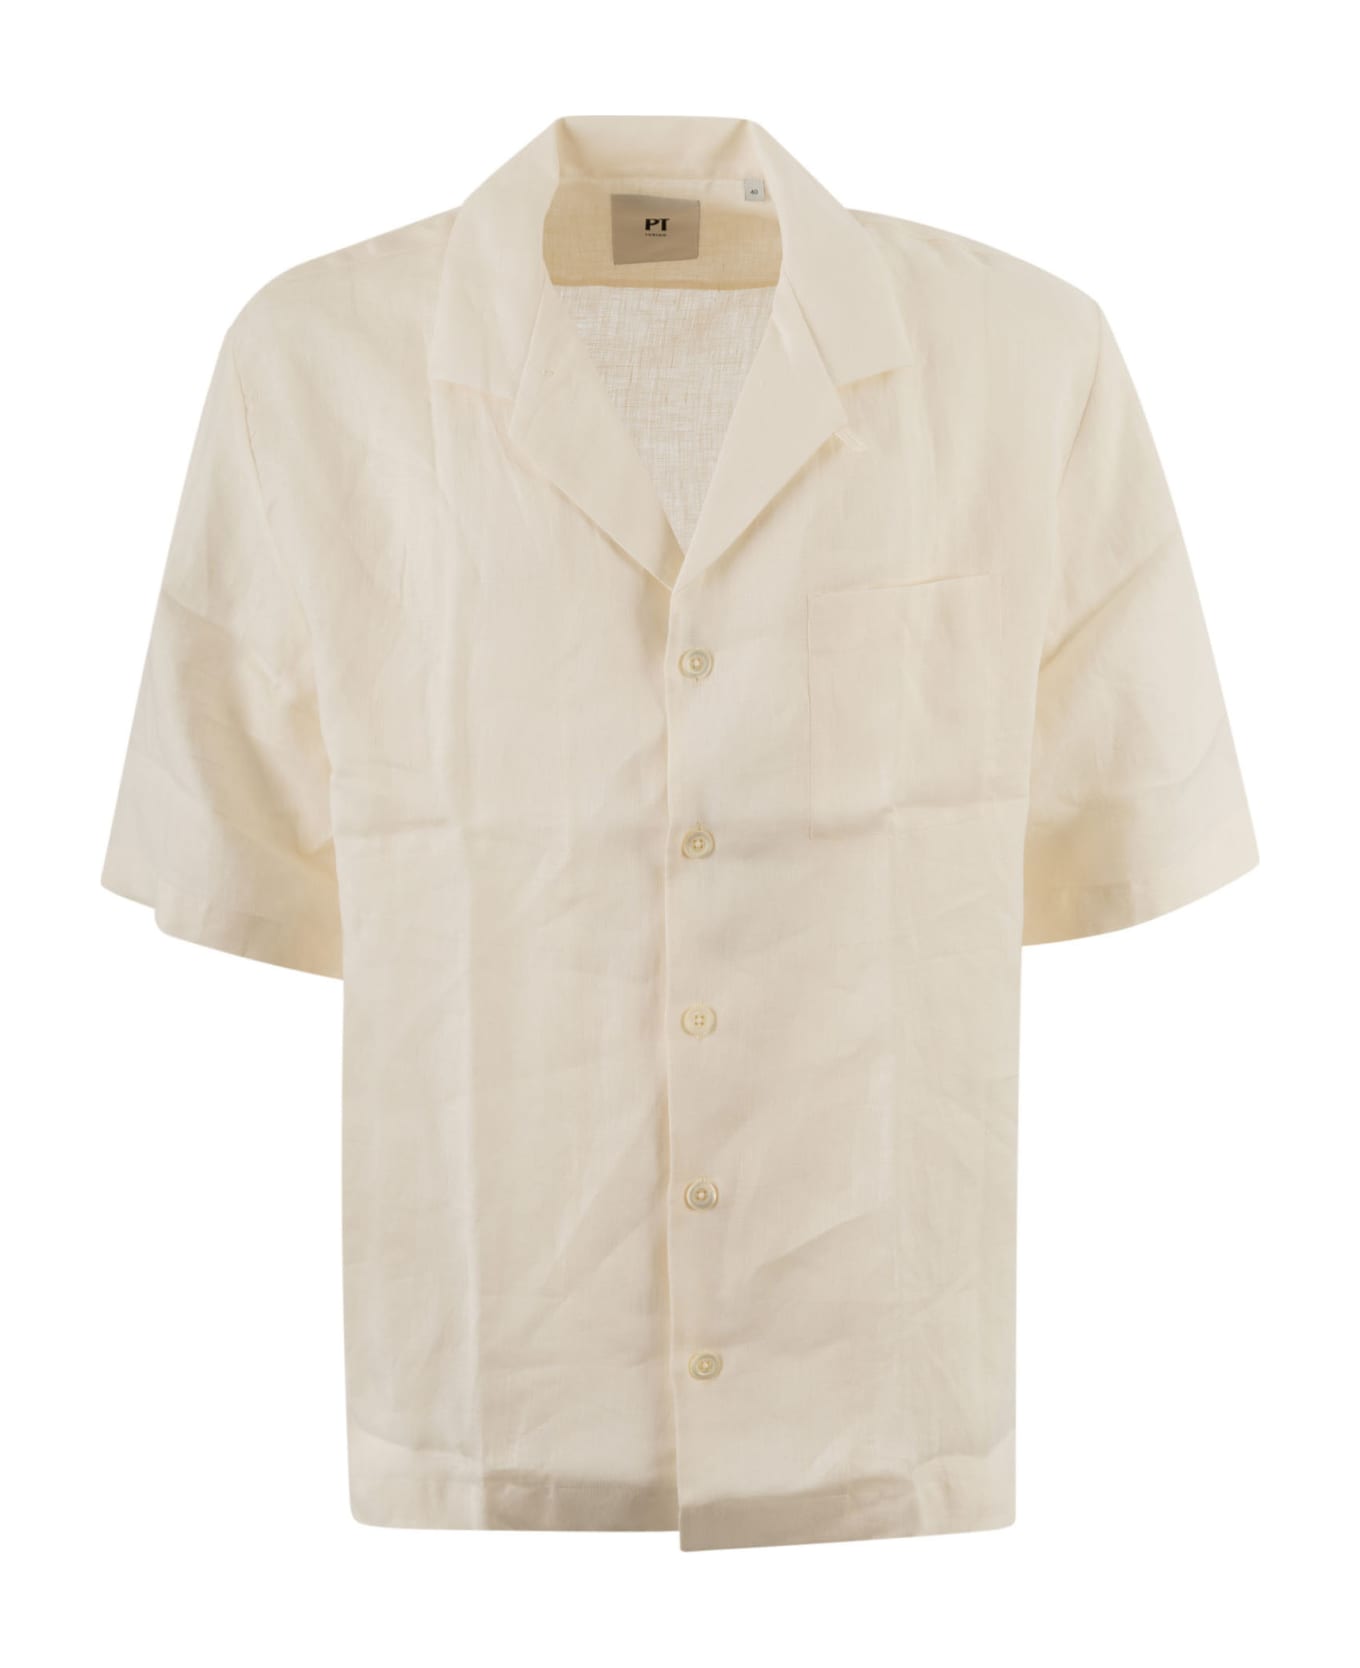 PT01 Patched Pocket Plain Formal Shirt - C